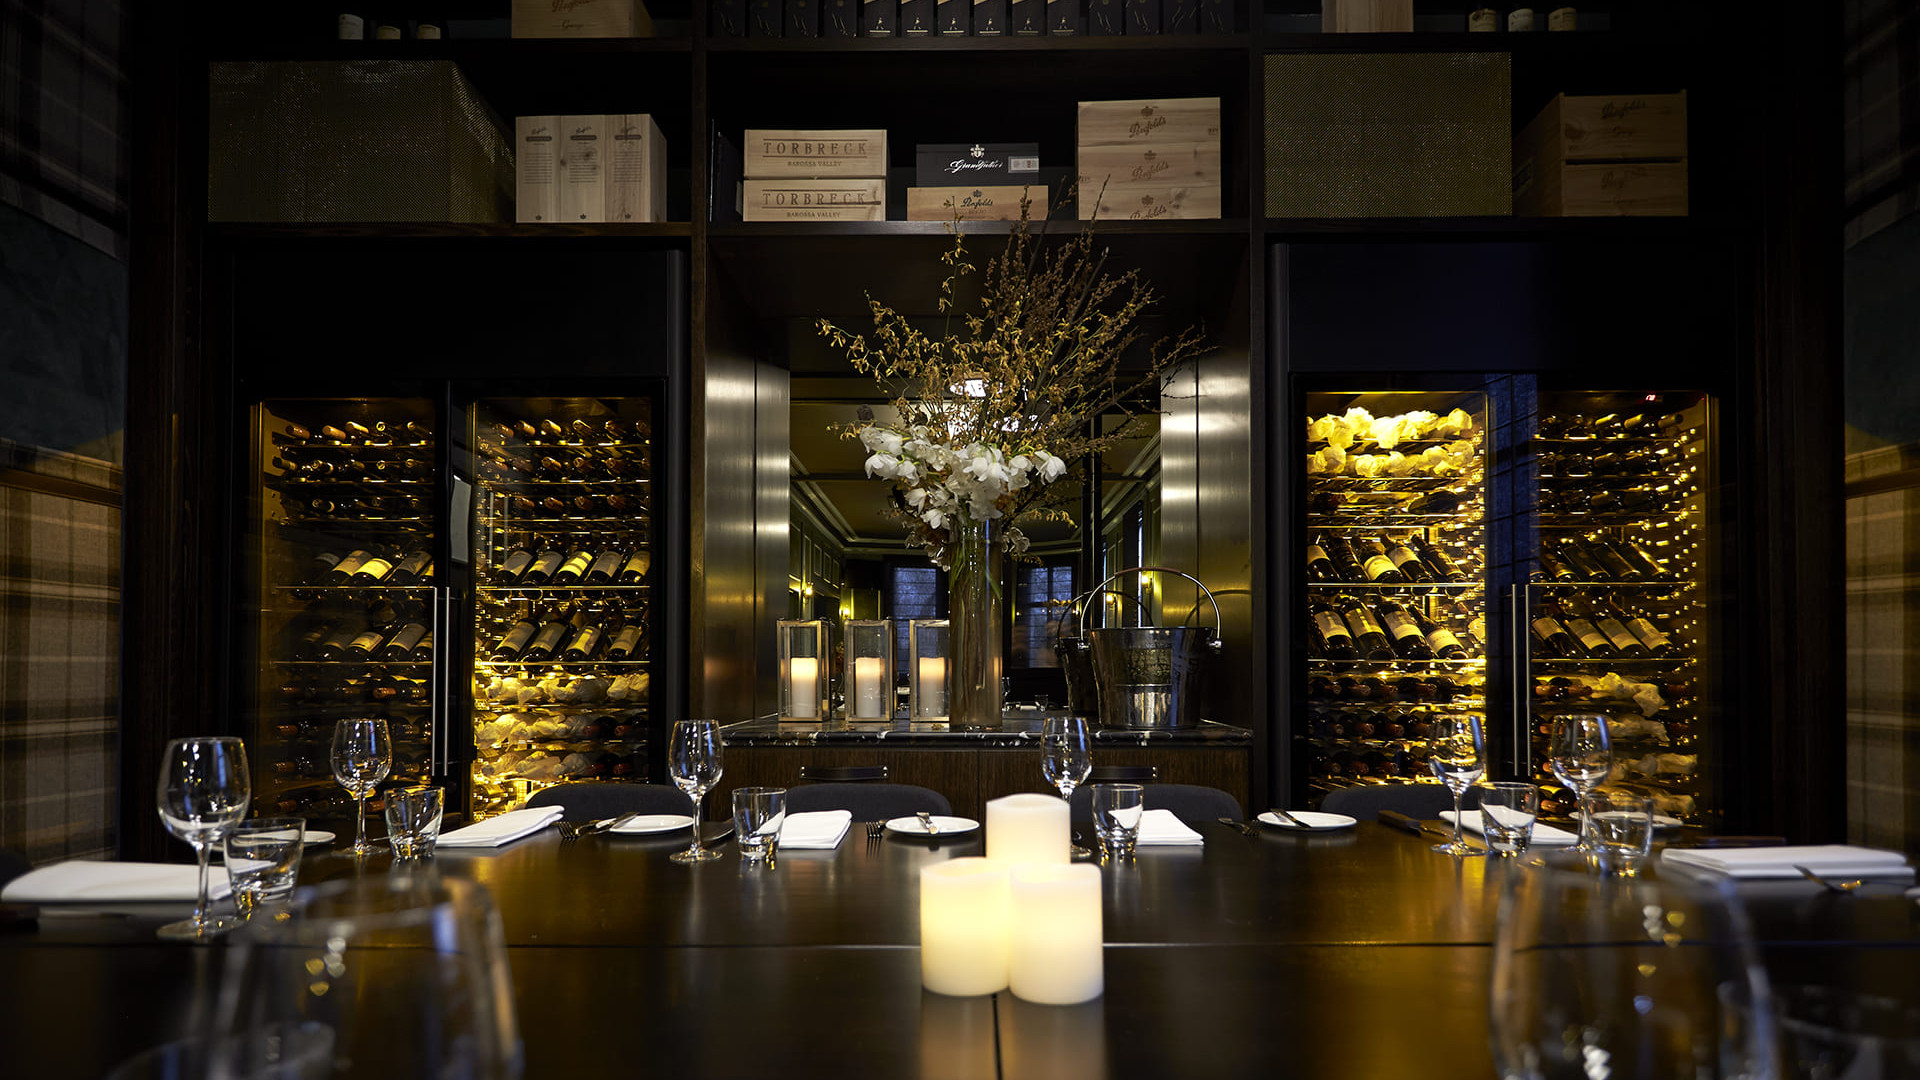 Integration professioneller gekühlter Weinvitrinen in dieses private Restaurant-Lounge-Layout. Hinterlassen Sie einen starken Eindruck und unterstreichen Sie Ihre Persönlichkeit mit der einzigartigen Inneneinrichtung eines Restaurants.